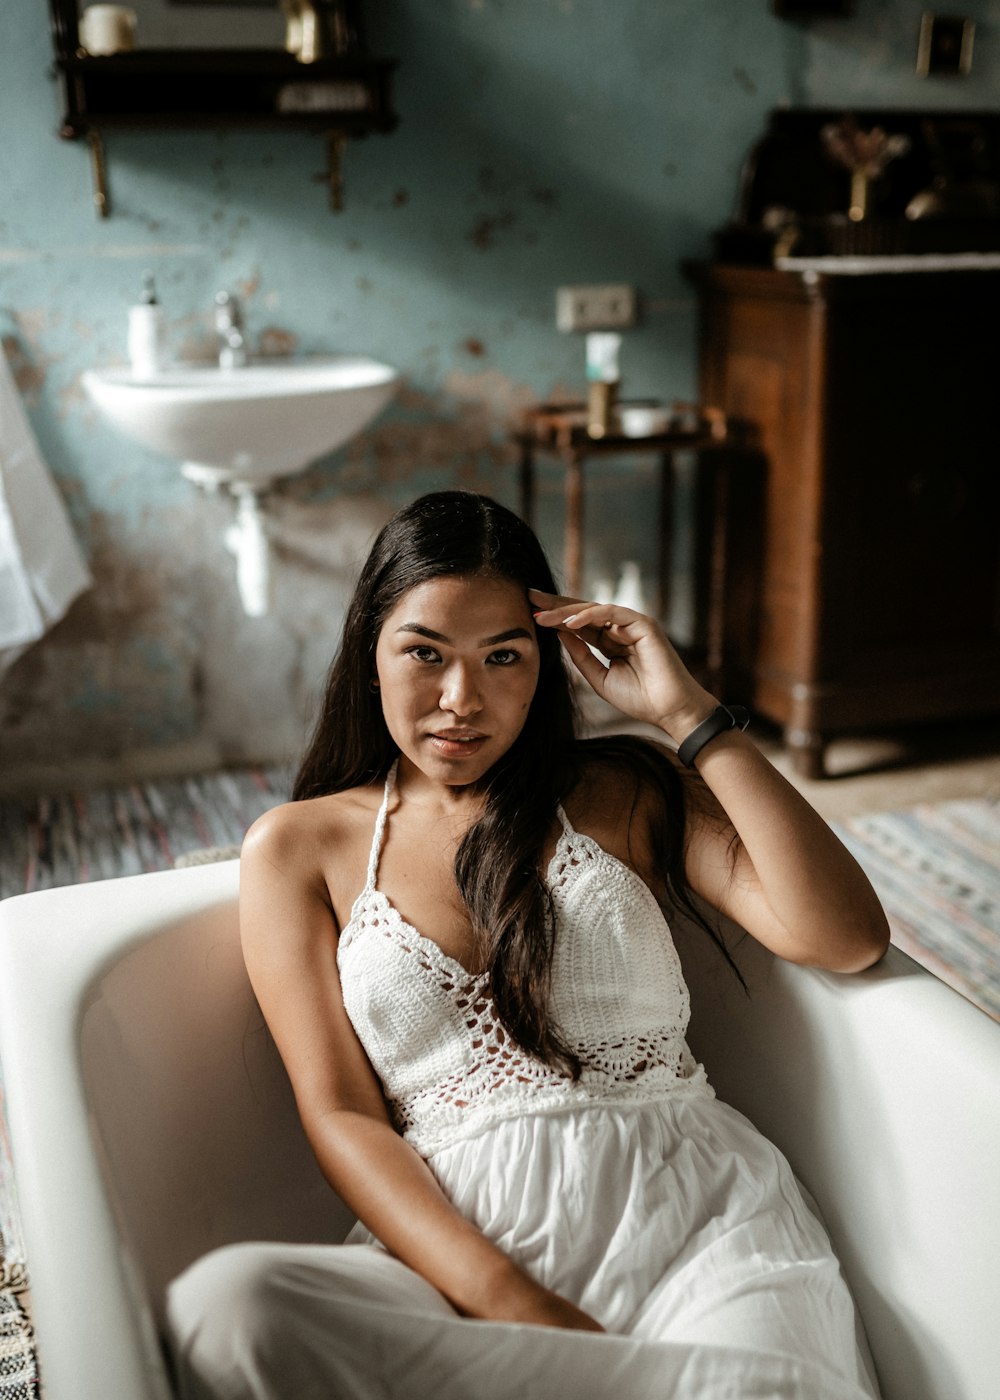 Frau in weißem ärmellosem Kleid sitzt auf weißer Keramikbadewanne